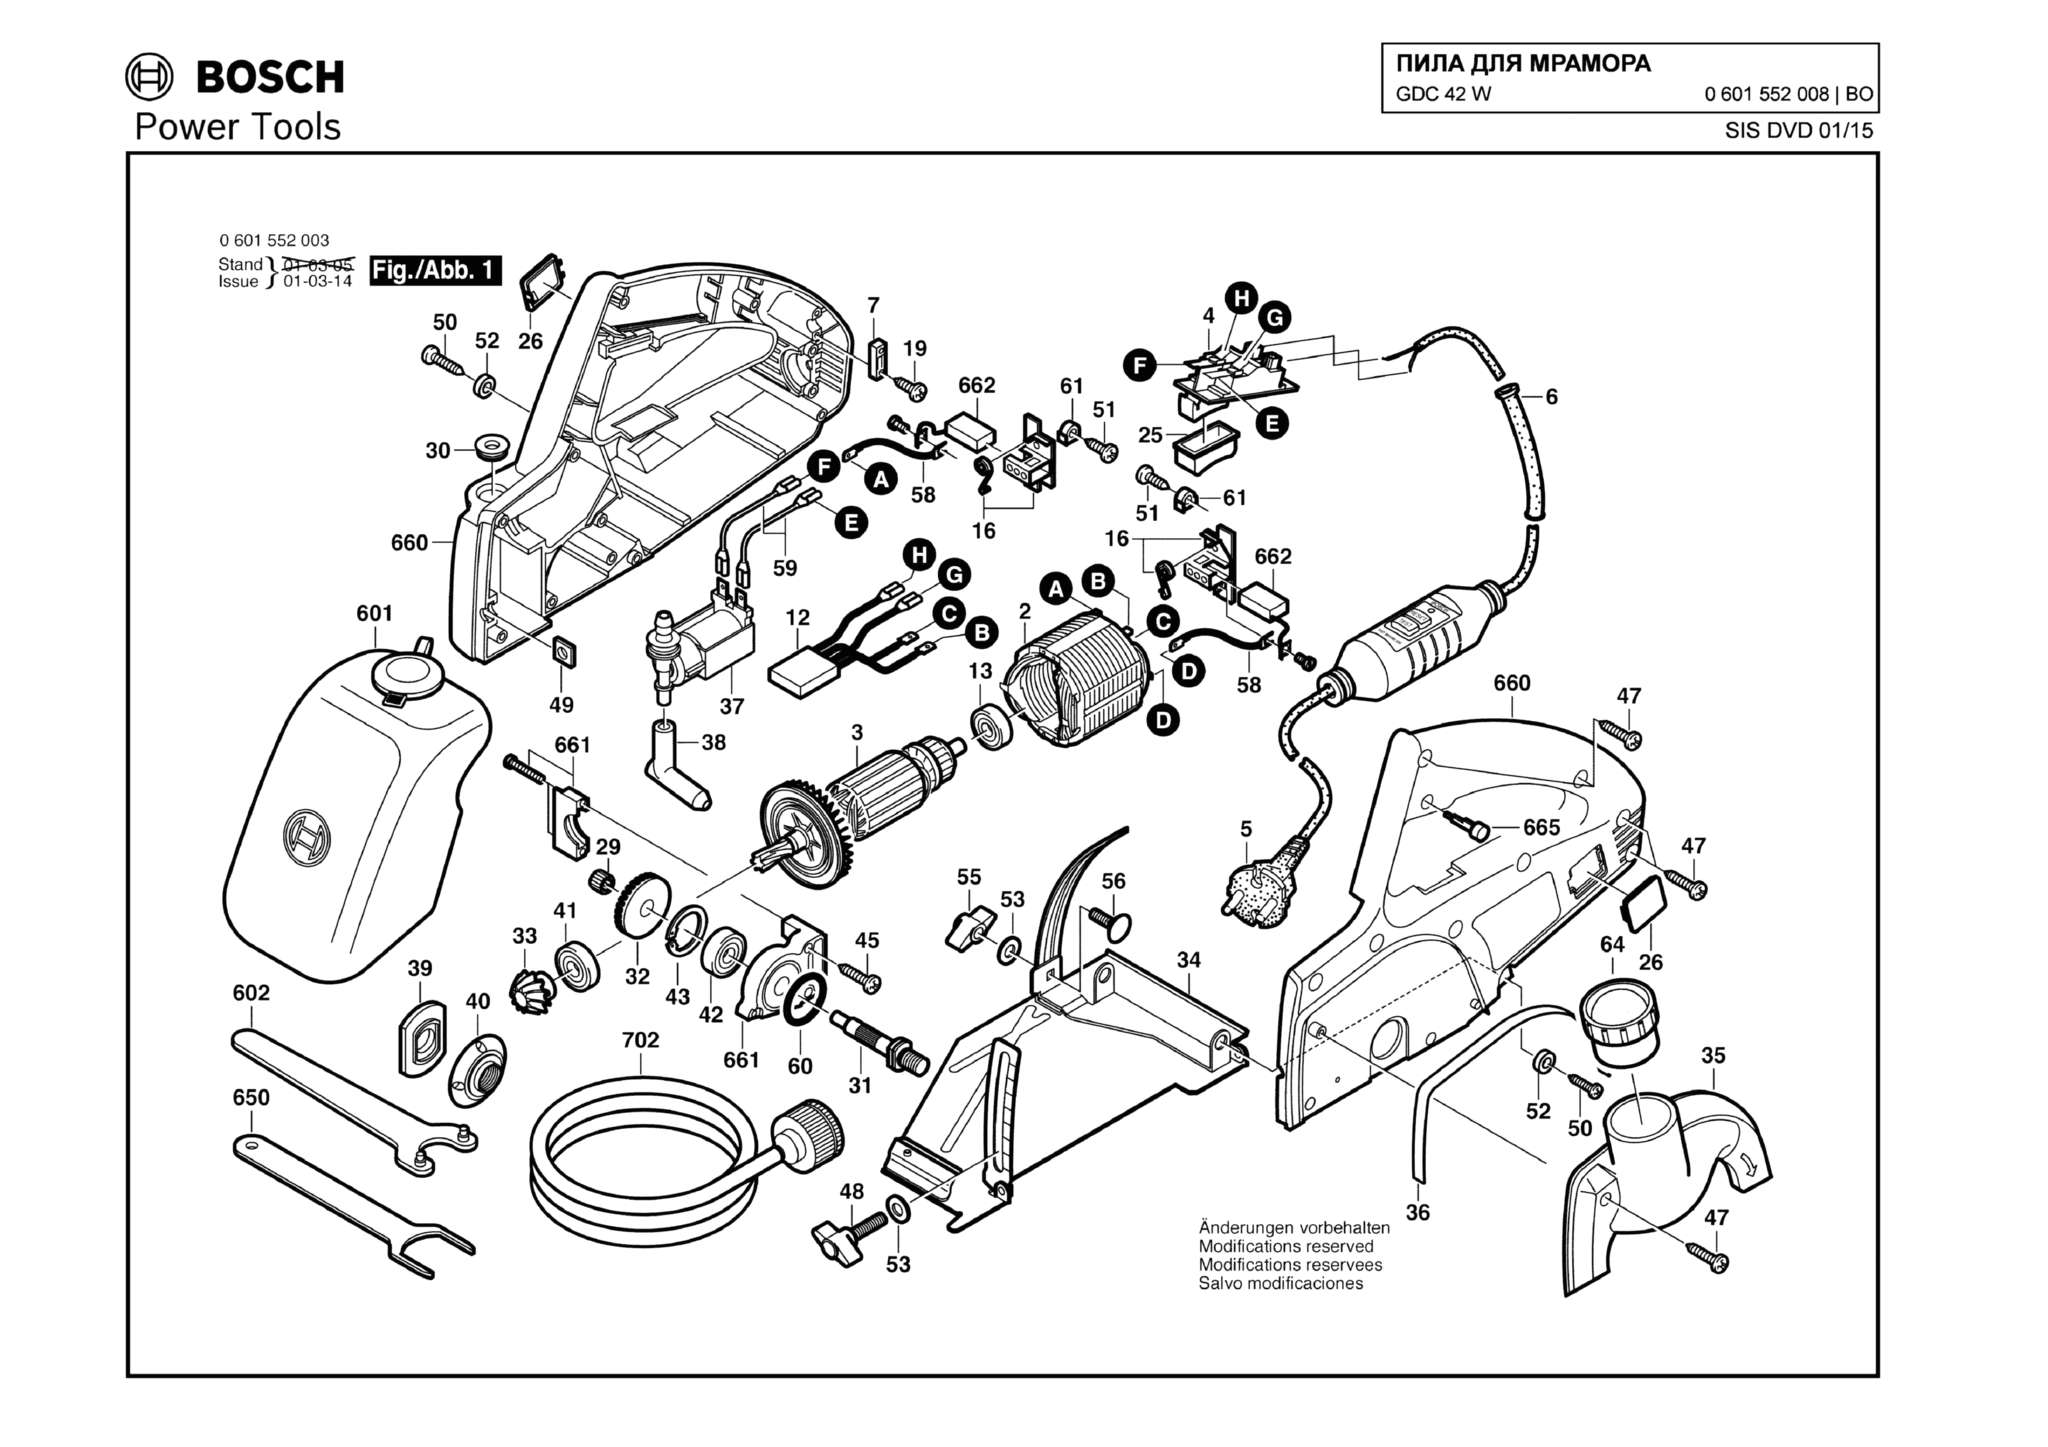 Запчасти, схема и деталировка Bosch GDC 42 W (ТИП 0601552008)